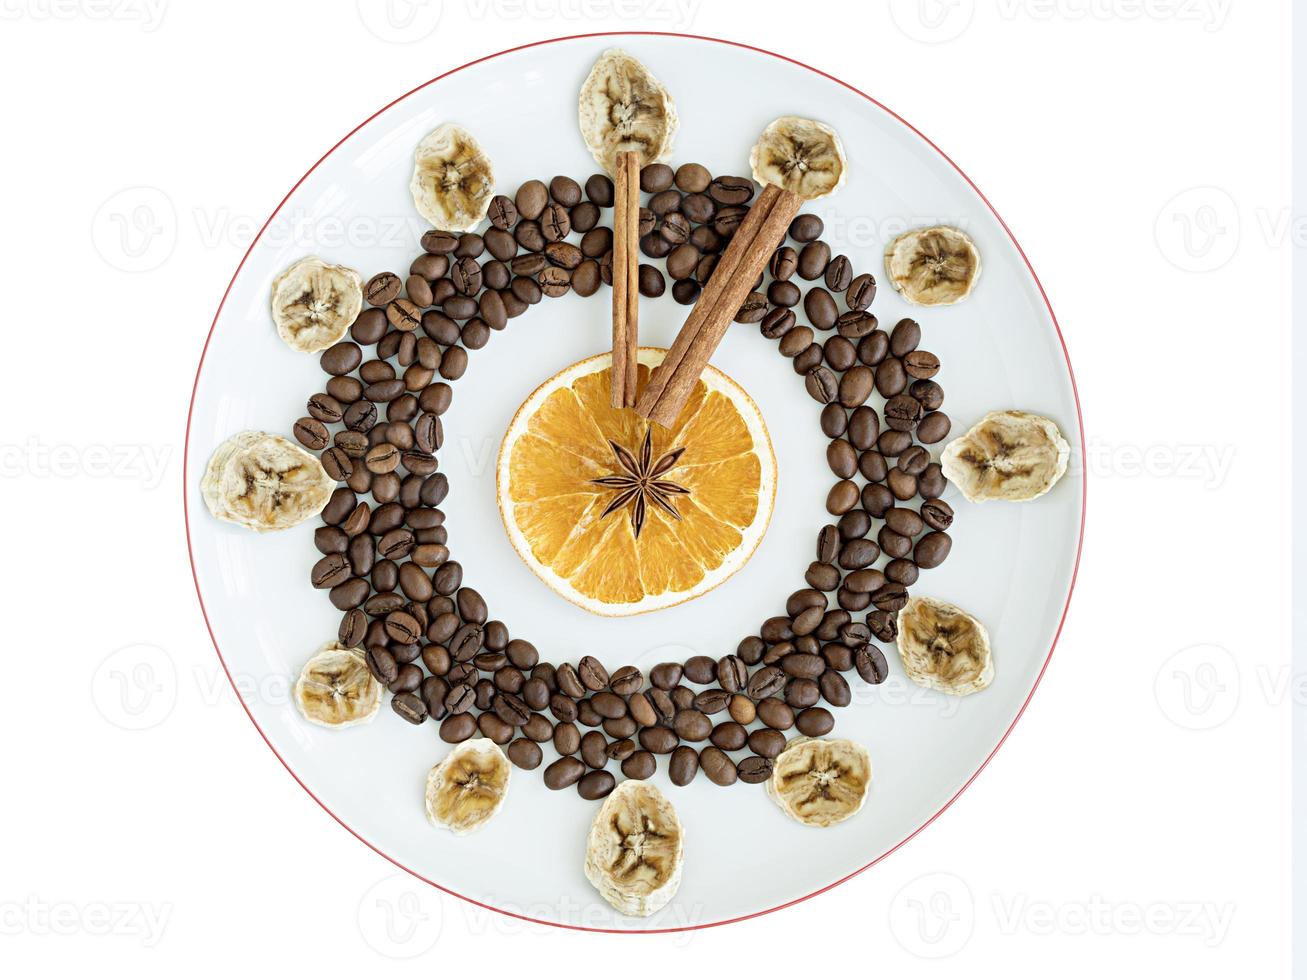 granos de café tostado, tazas de naranja seca y plátano, canela en rama, estrella de anís yacen sobre un plato de porcelana en forma de reloj foto